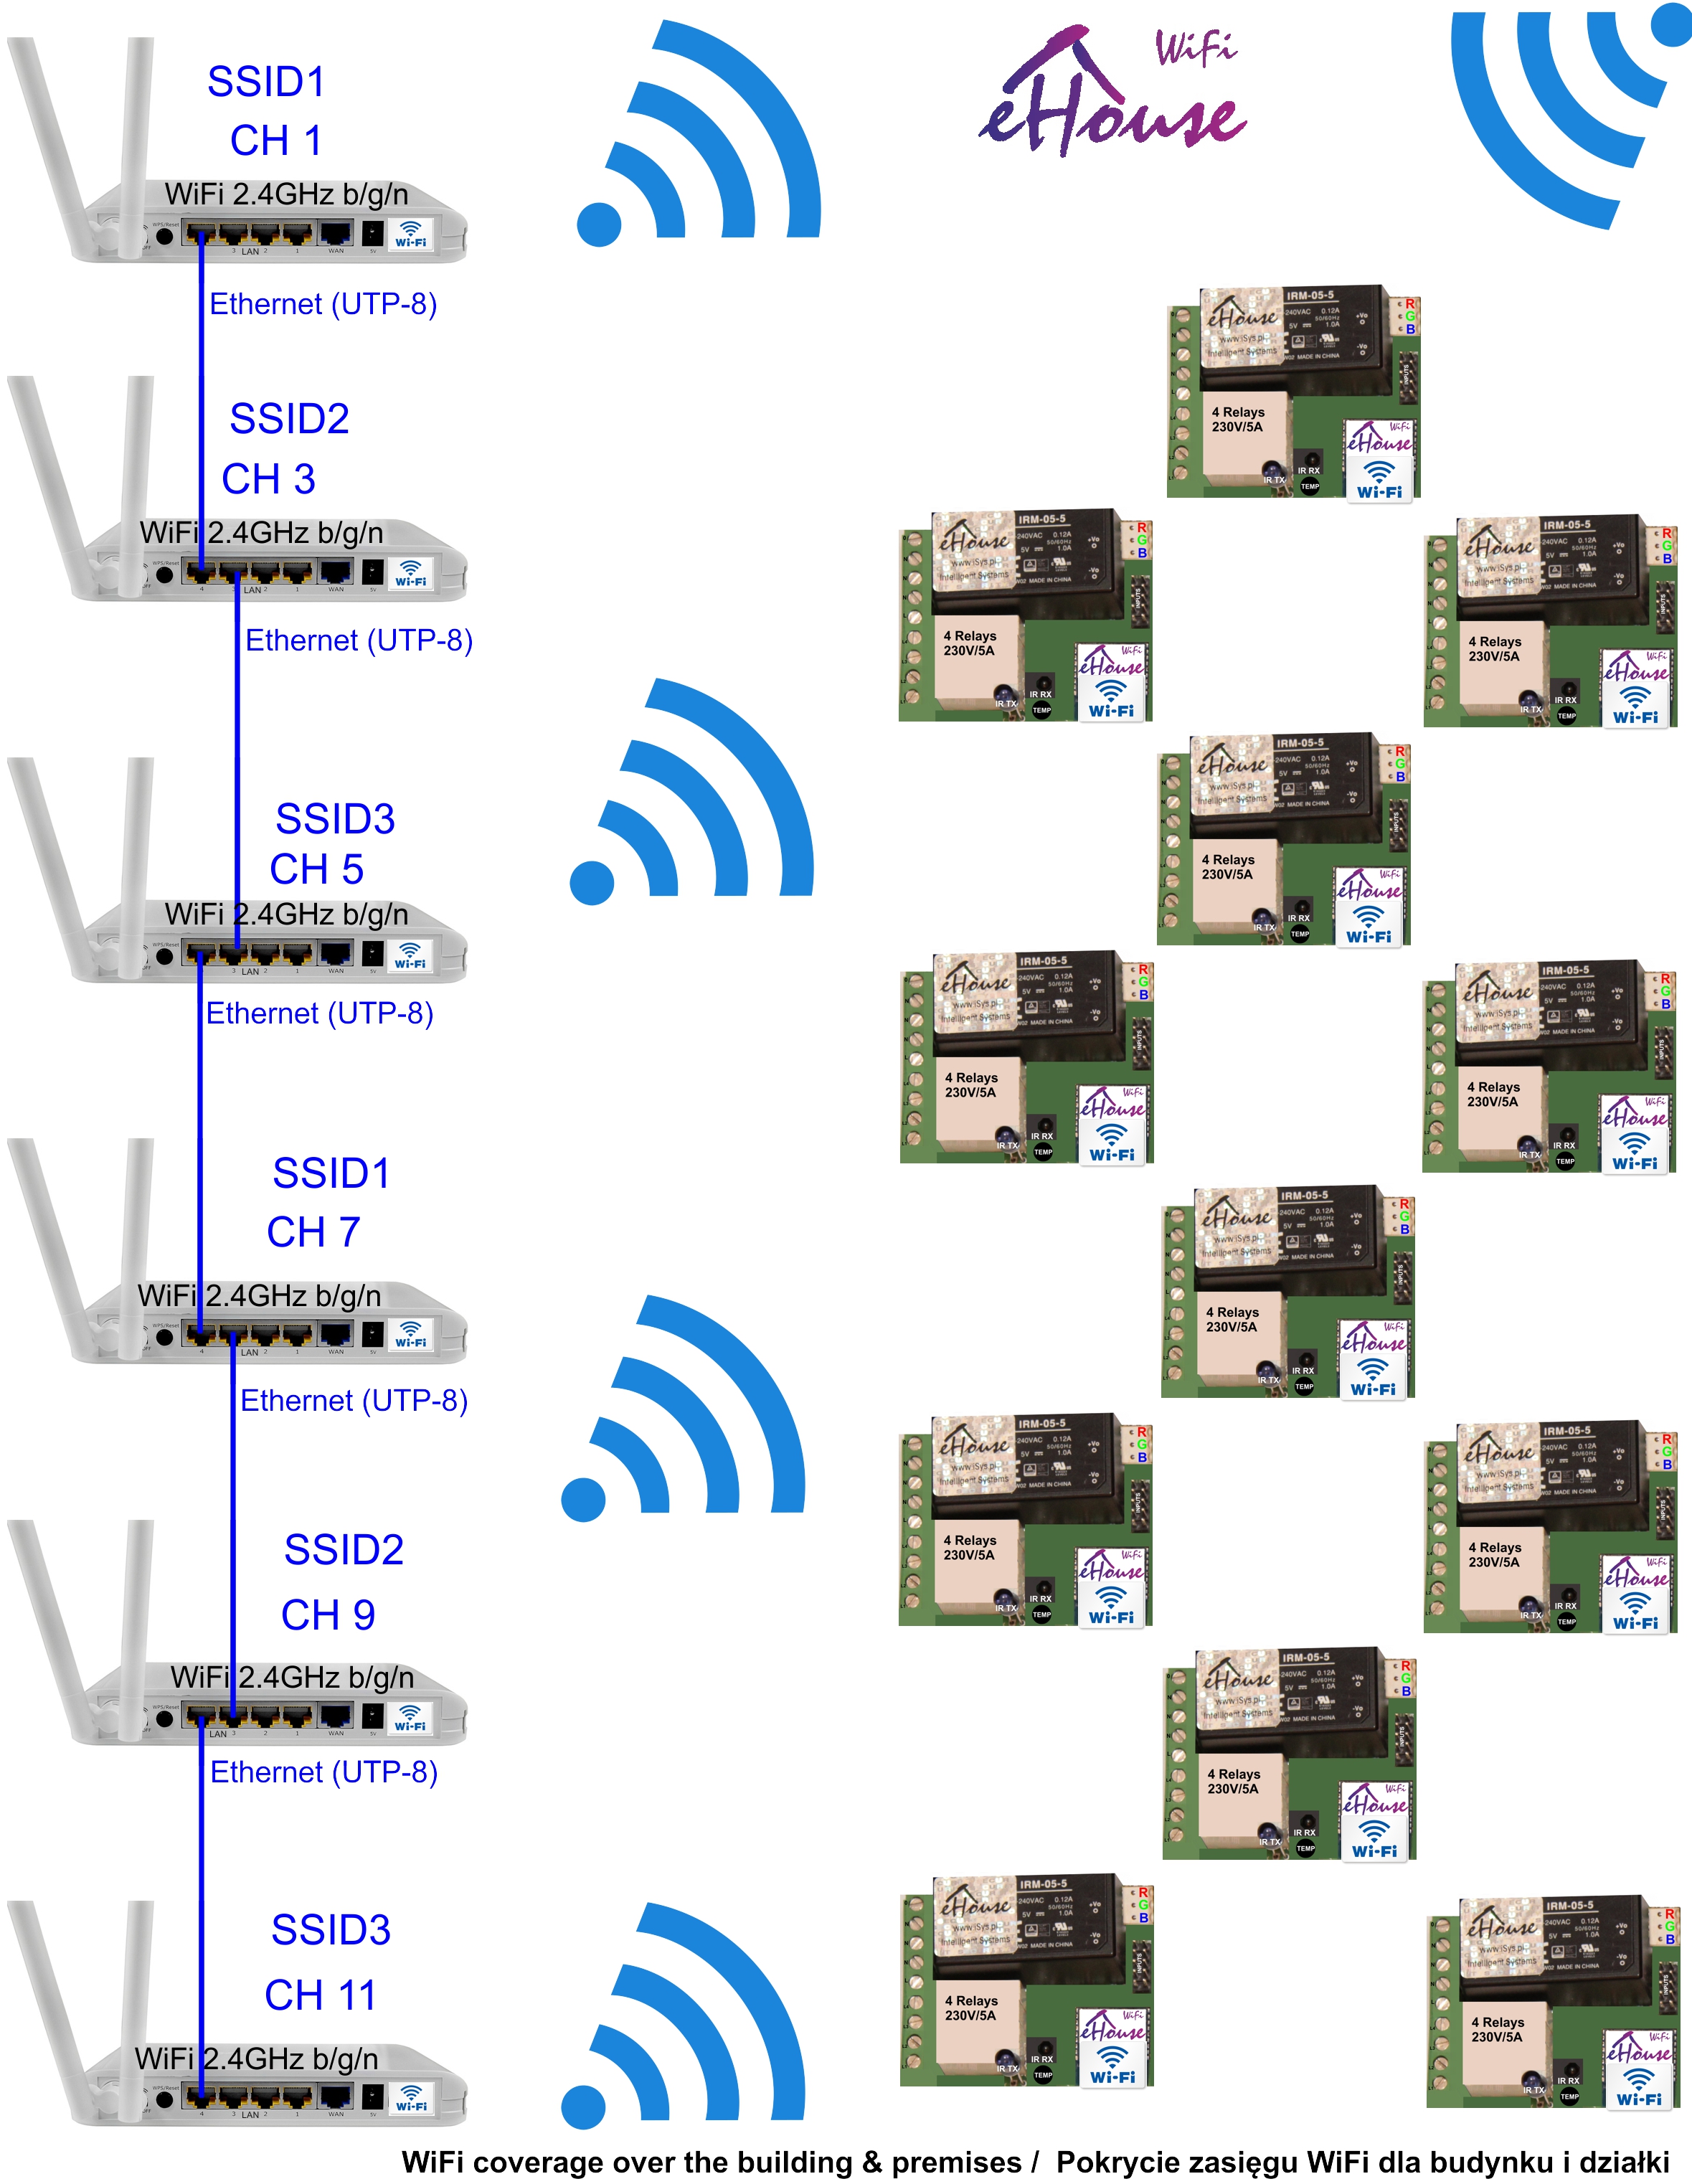 Inteligentny dom eHouse LAN/WiFi - schemat infrastruktury sieci Wifi/Ethernet